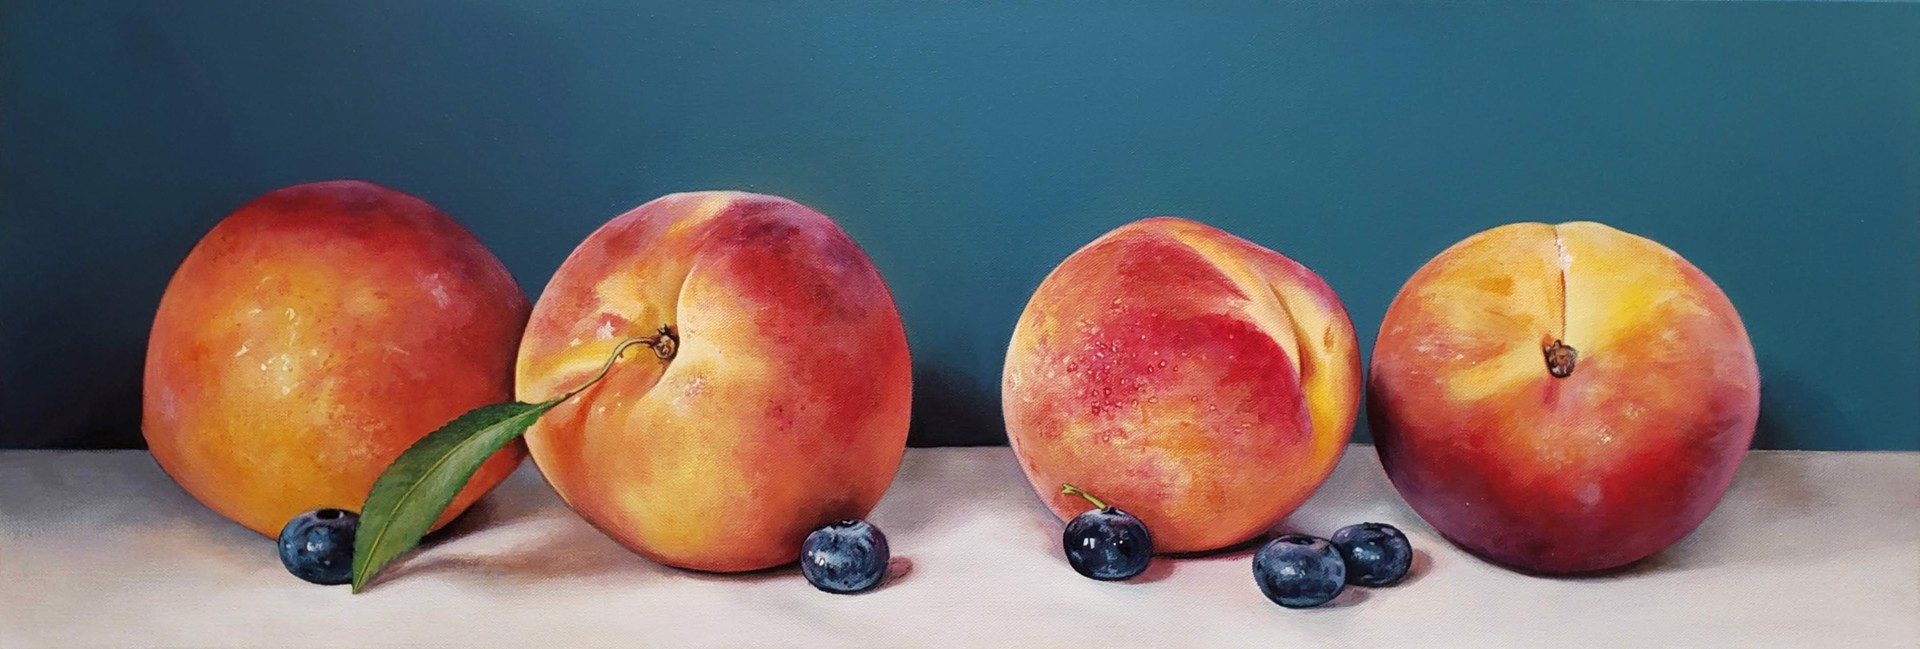 Peaches and Blackberries by Katie Koenig